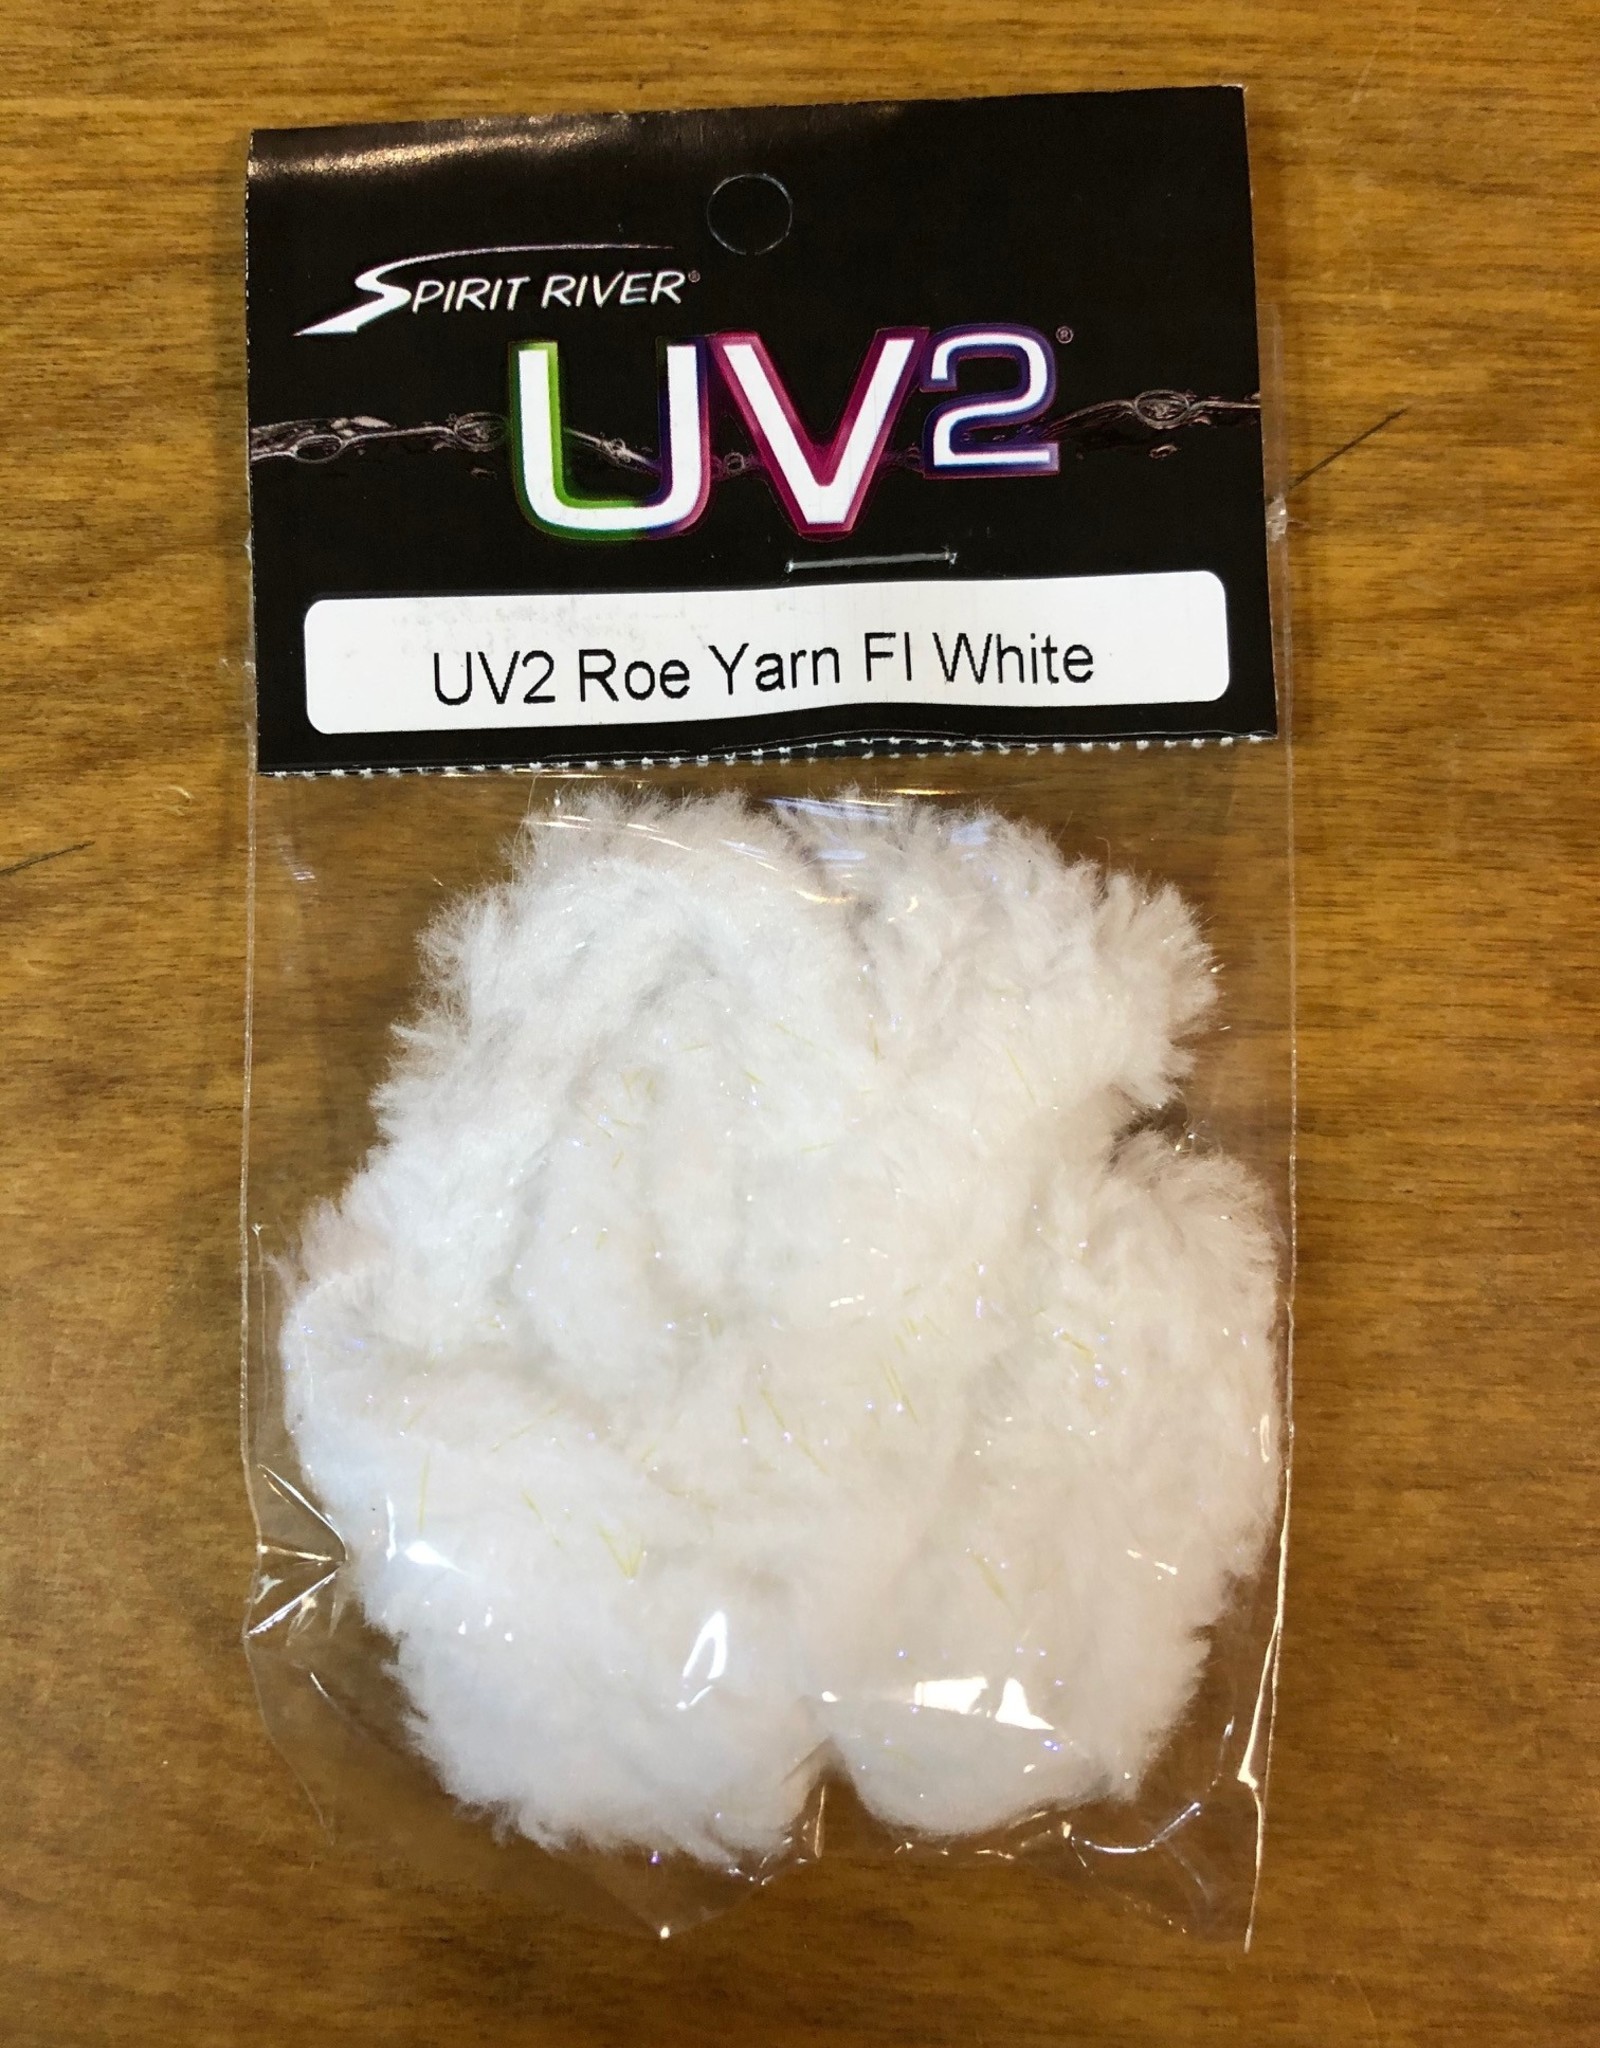 UV2 Roe Yarn